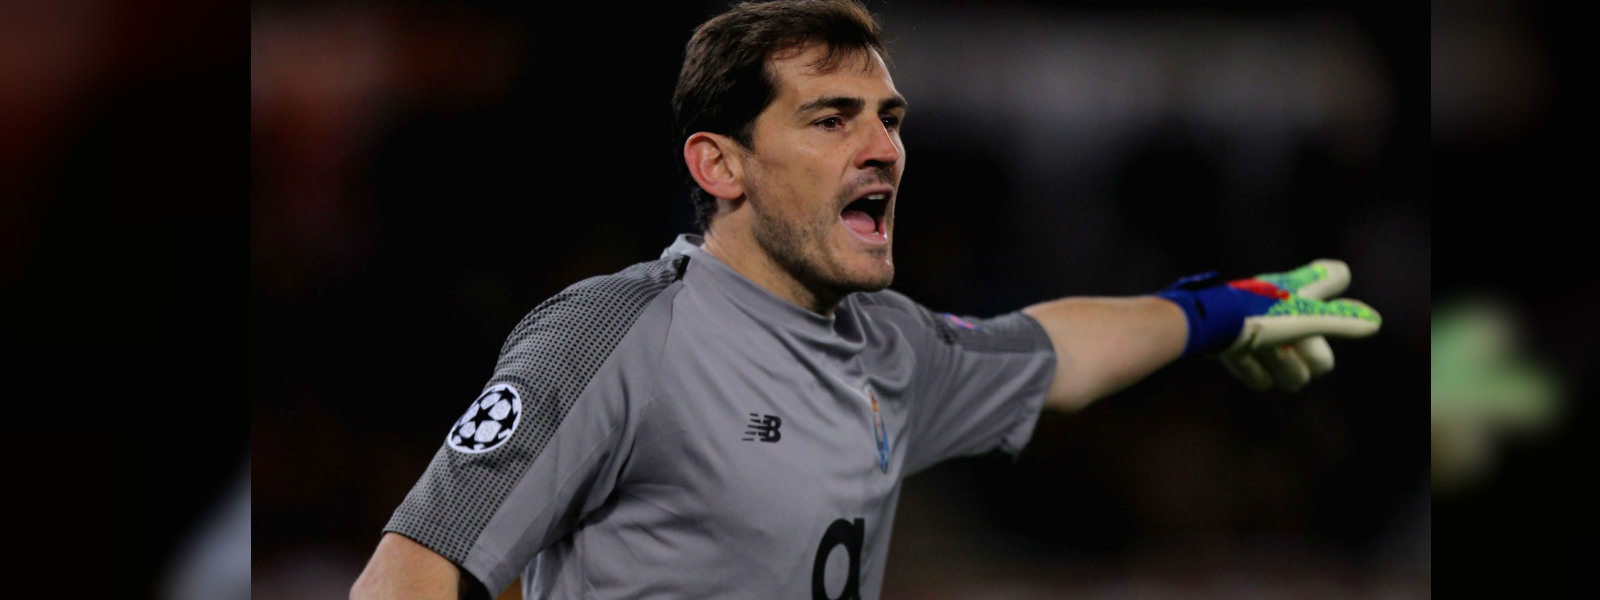 Casillas not ready to retire